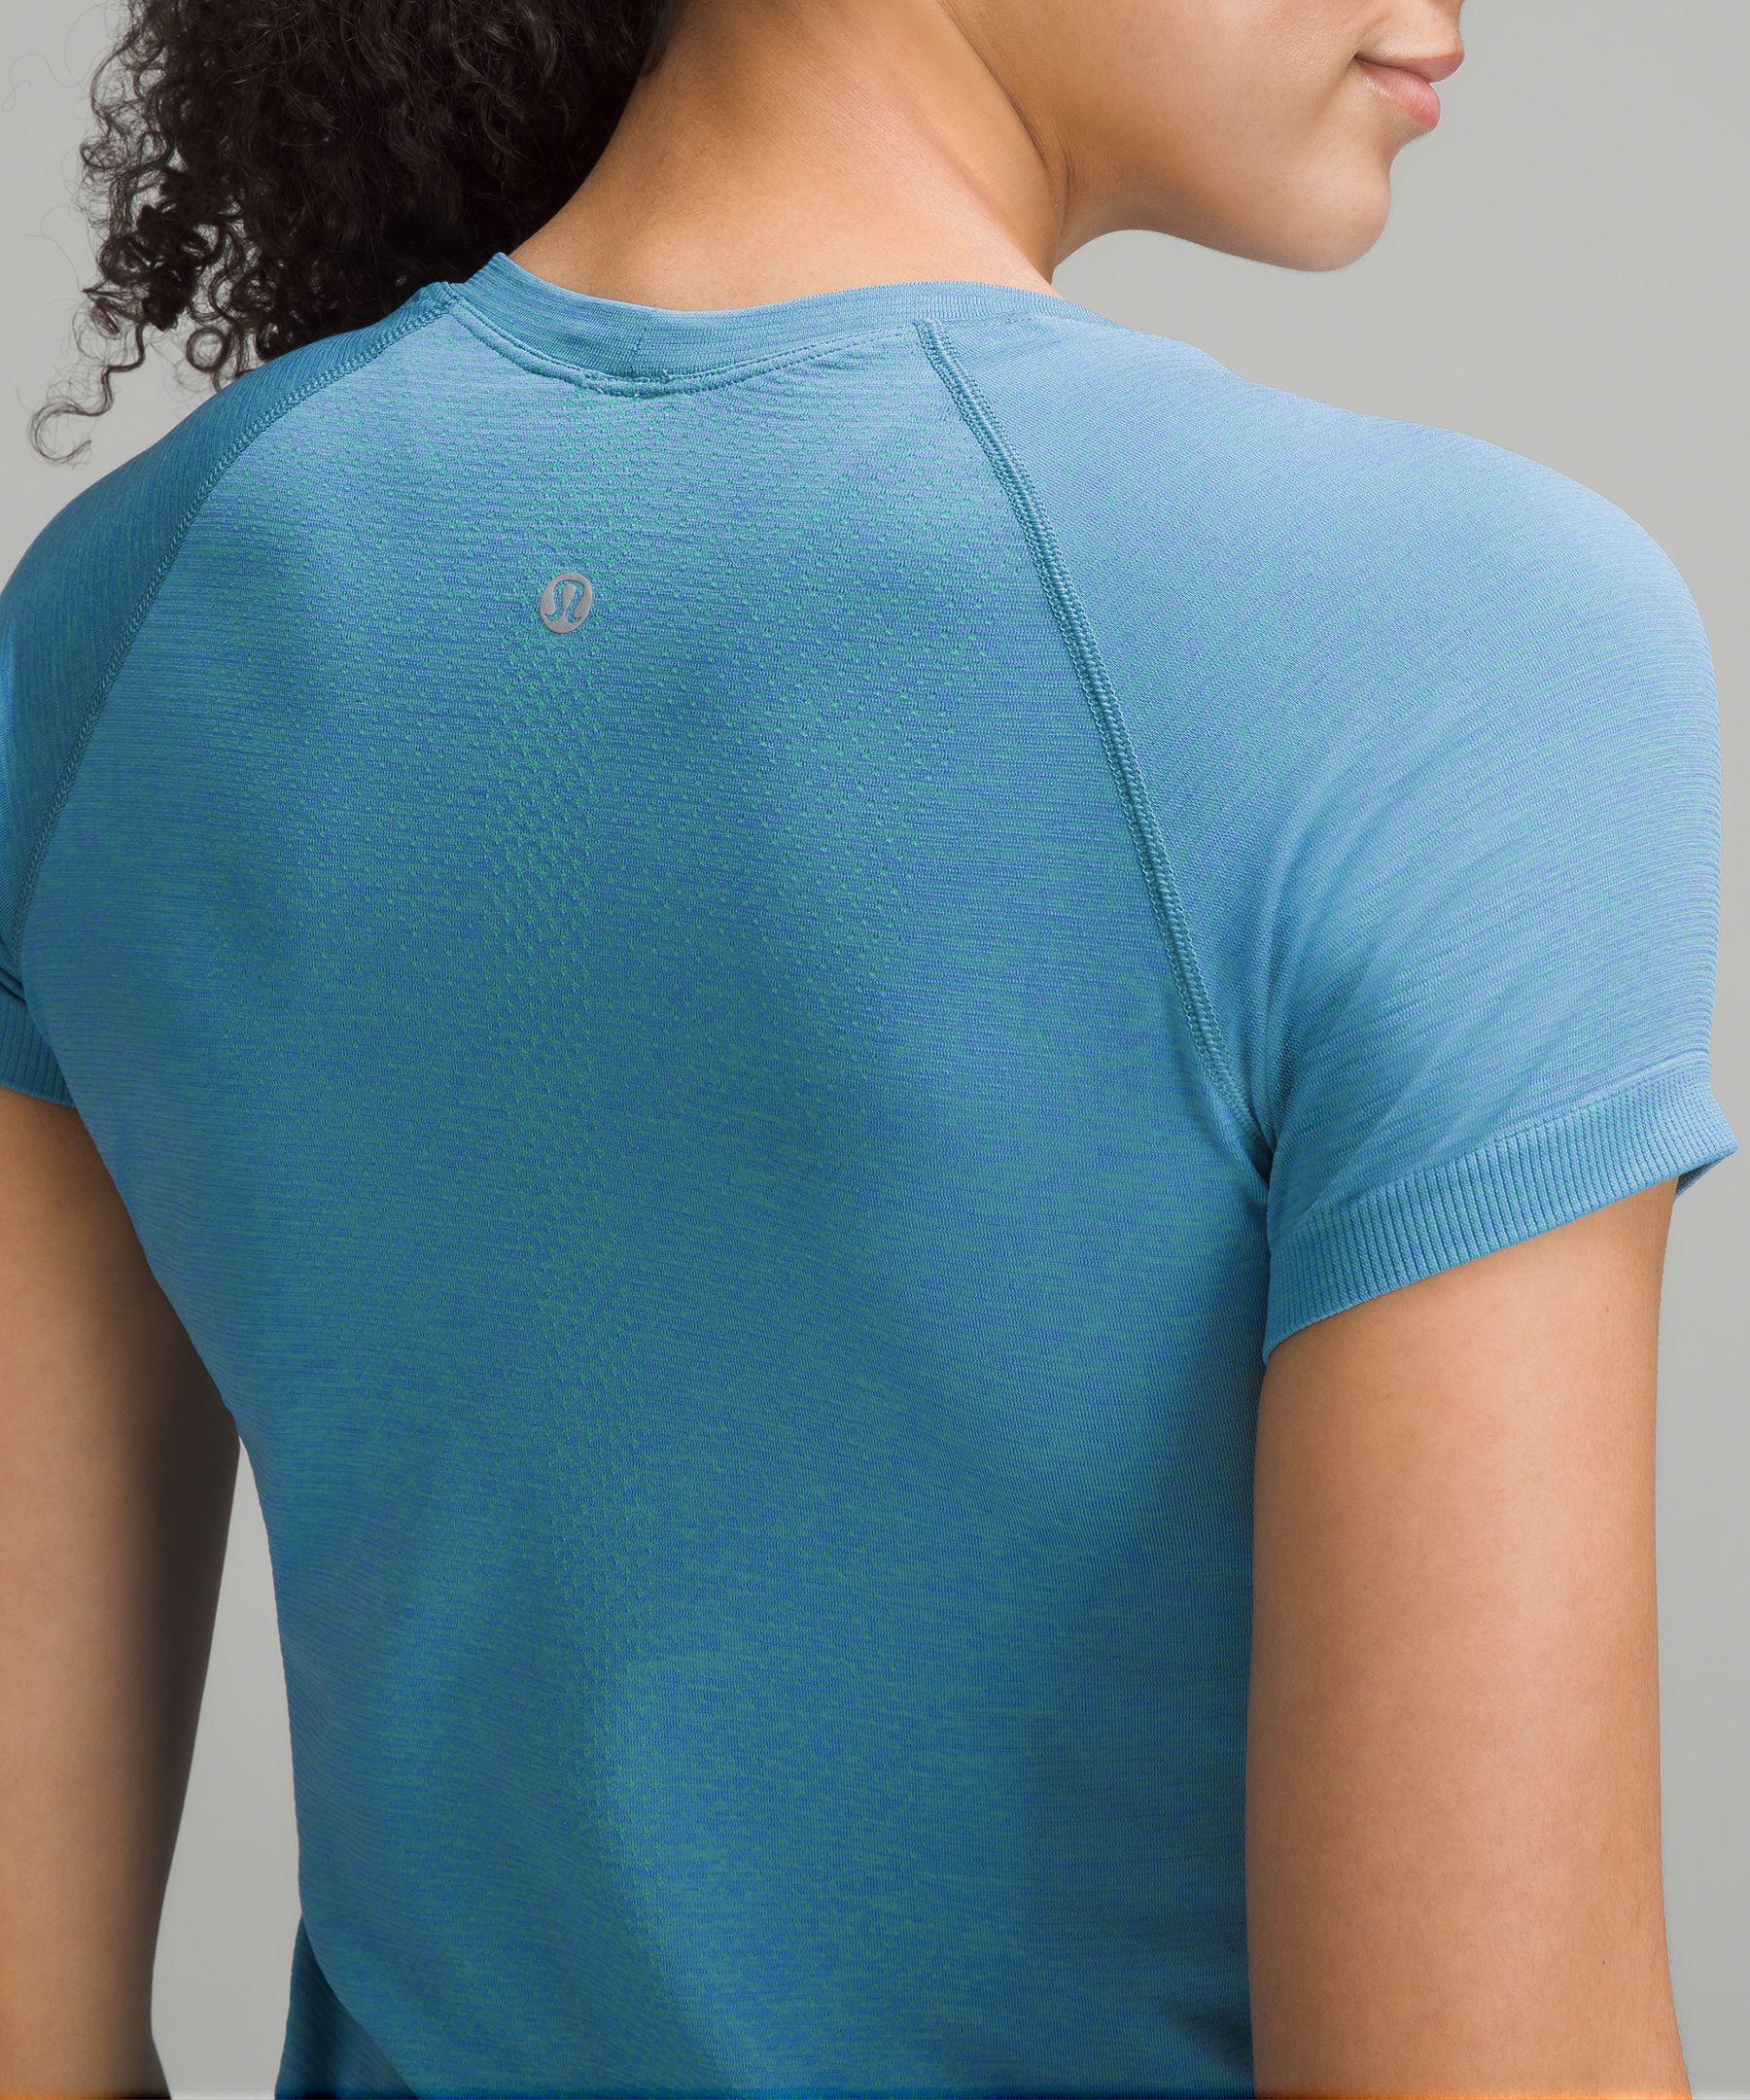 Lululemon Swiftly Tech Short Sleeve Shirt 2.0 - Charged Indigo